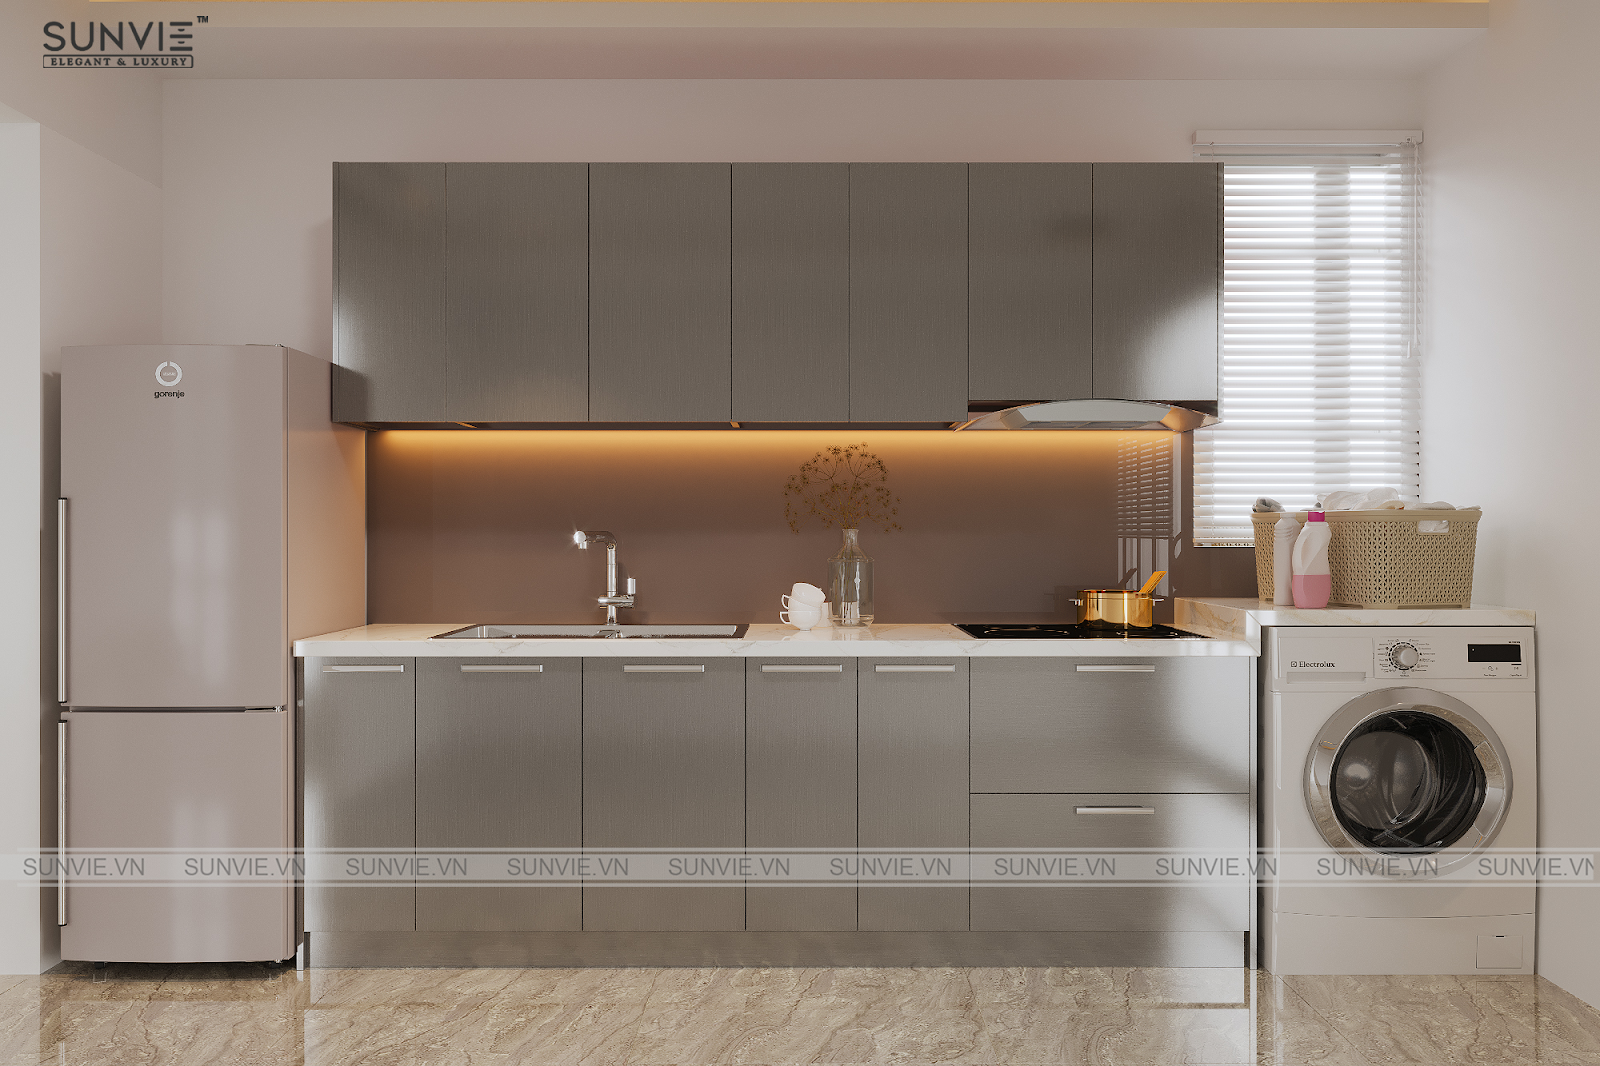 Tủ bếp SVE I25 Sunvie với thiết kế đơn giản, màu sắc trang nhã thích hợp với nhà bếp có diện tích nhỏ theo phong cách hiện đại. 